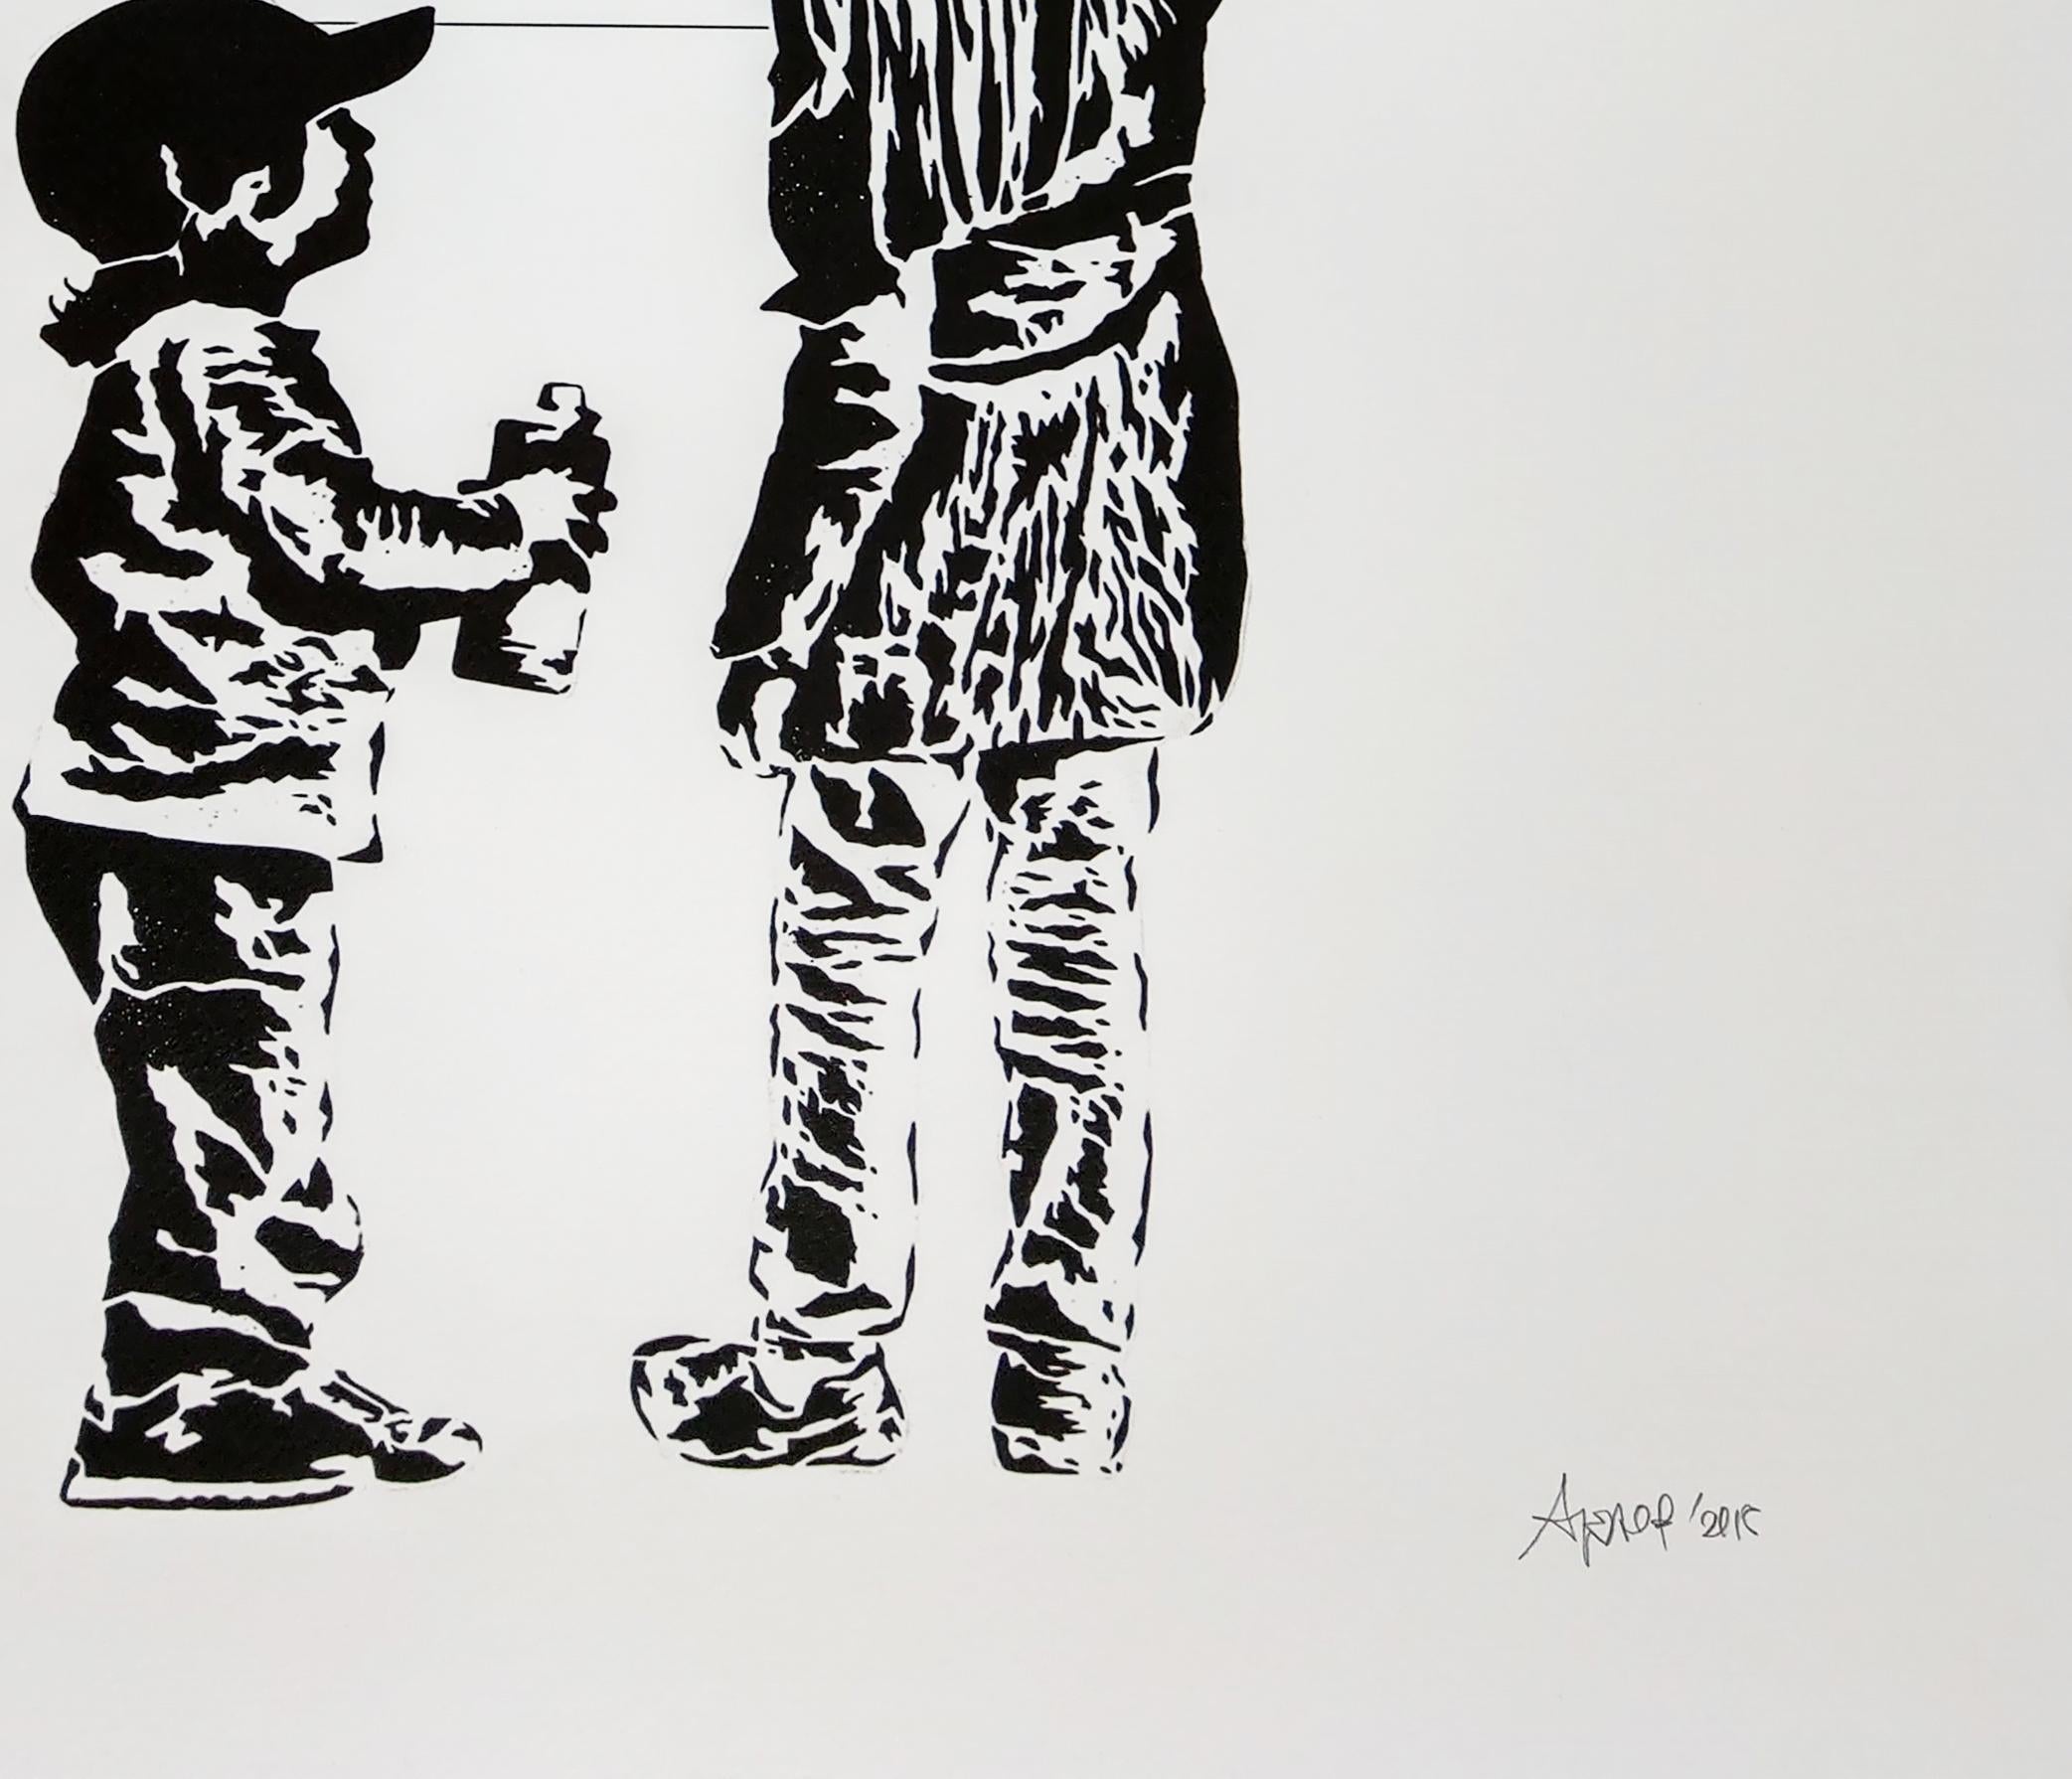 Don't Stop Dreaming by Alessio-B, Contemporary Street Art Print. Dimensions 70 x 50 cm avec sortie en 2015. Vient d'une édition de 15 pièces. Belle pièce parfaite pour les familles, dans une crèche où les enfants peuvent s'amuser, ou dans une salle